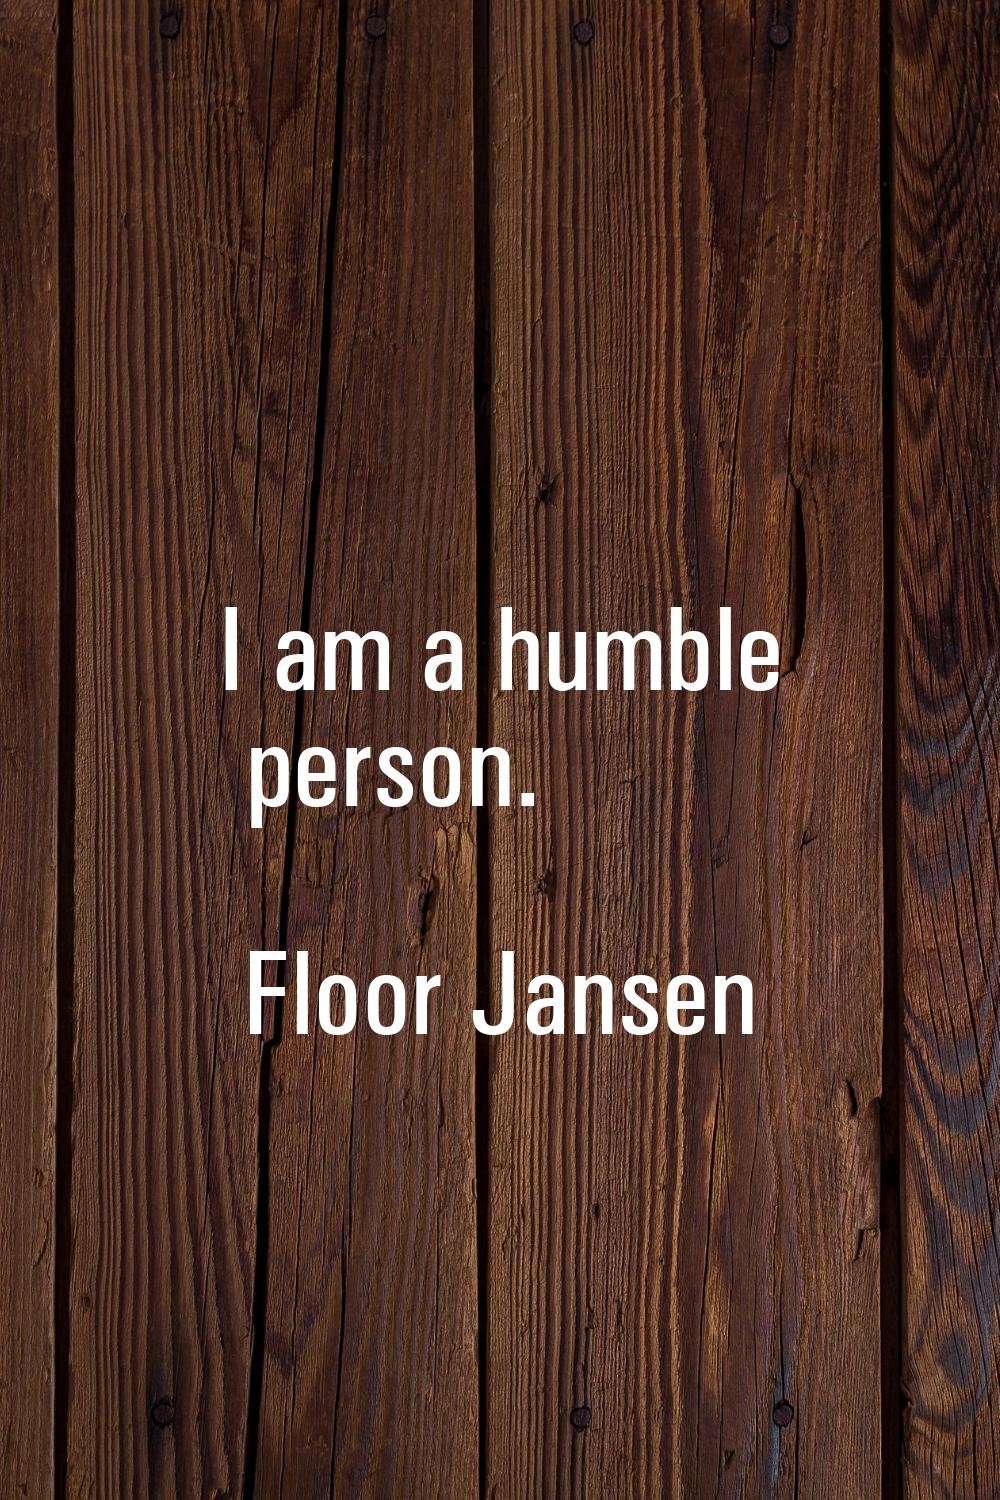 I am a humble person.